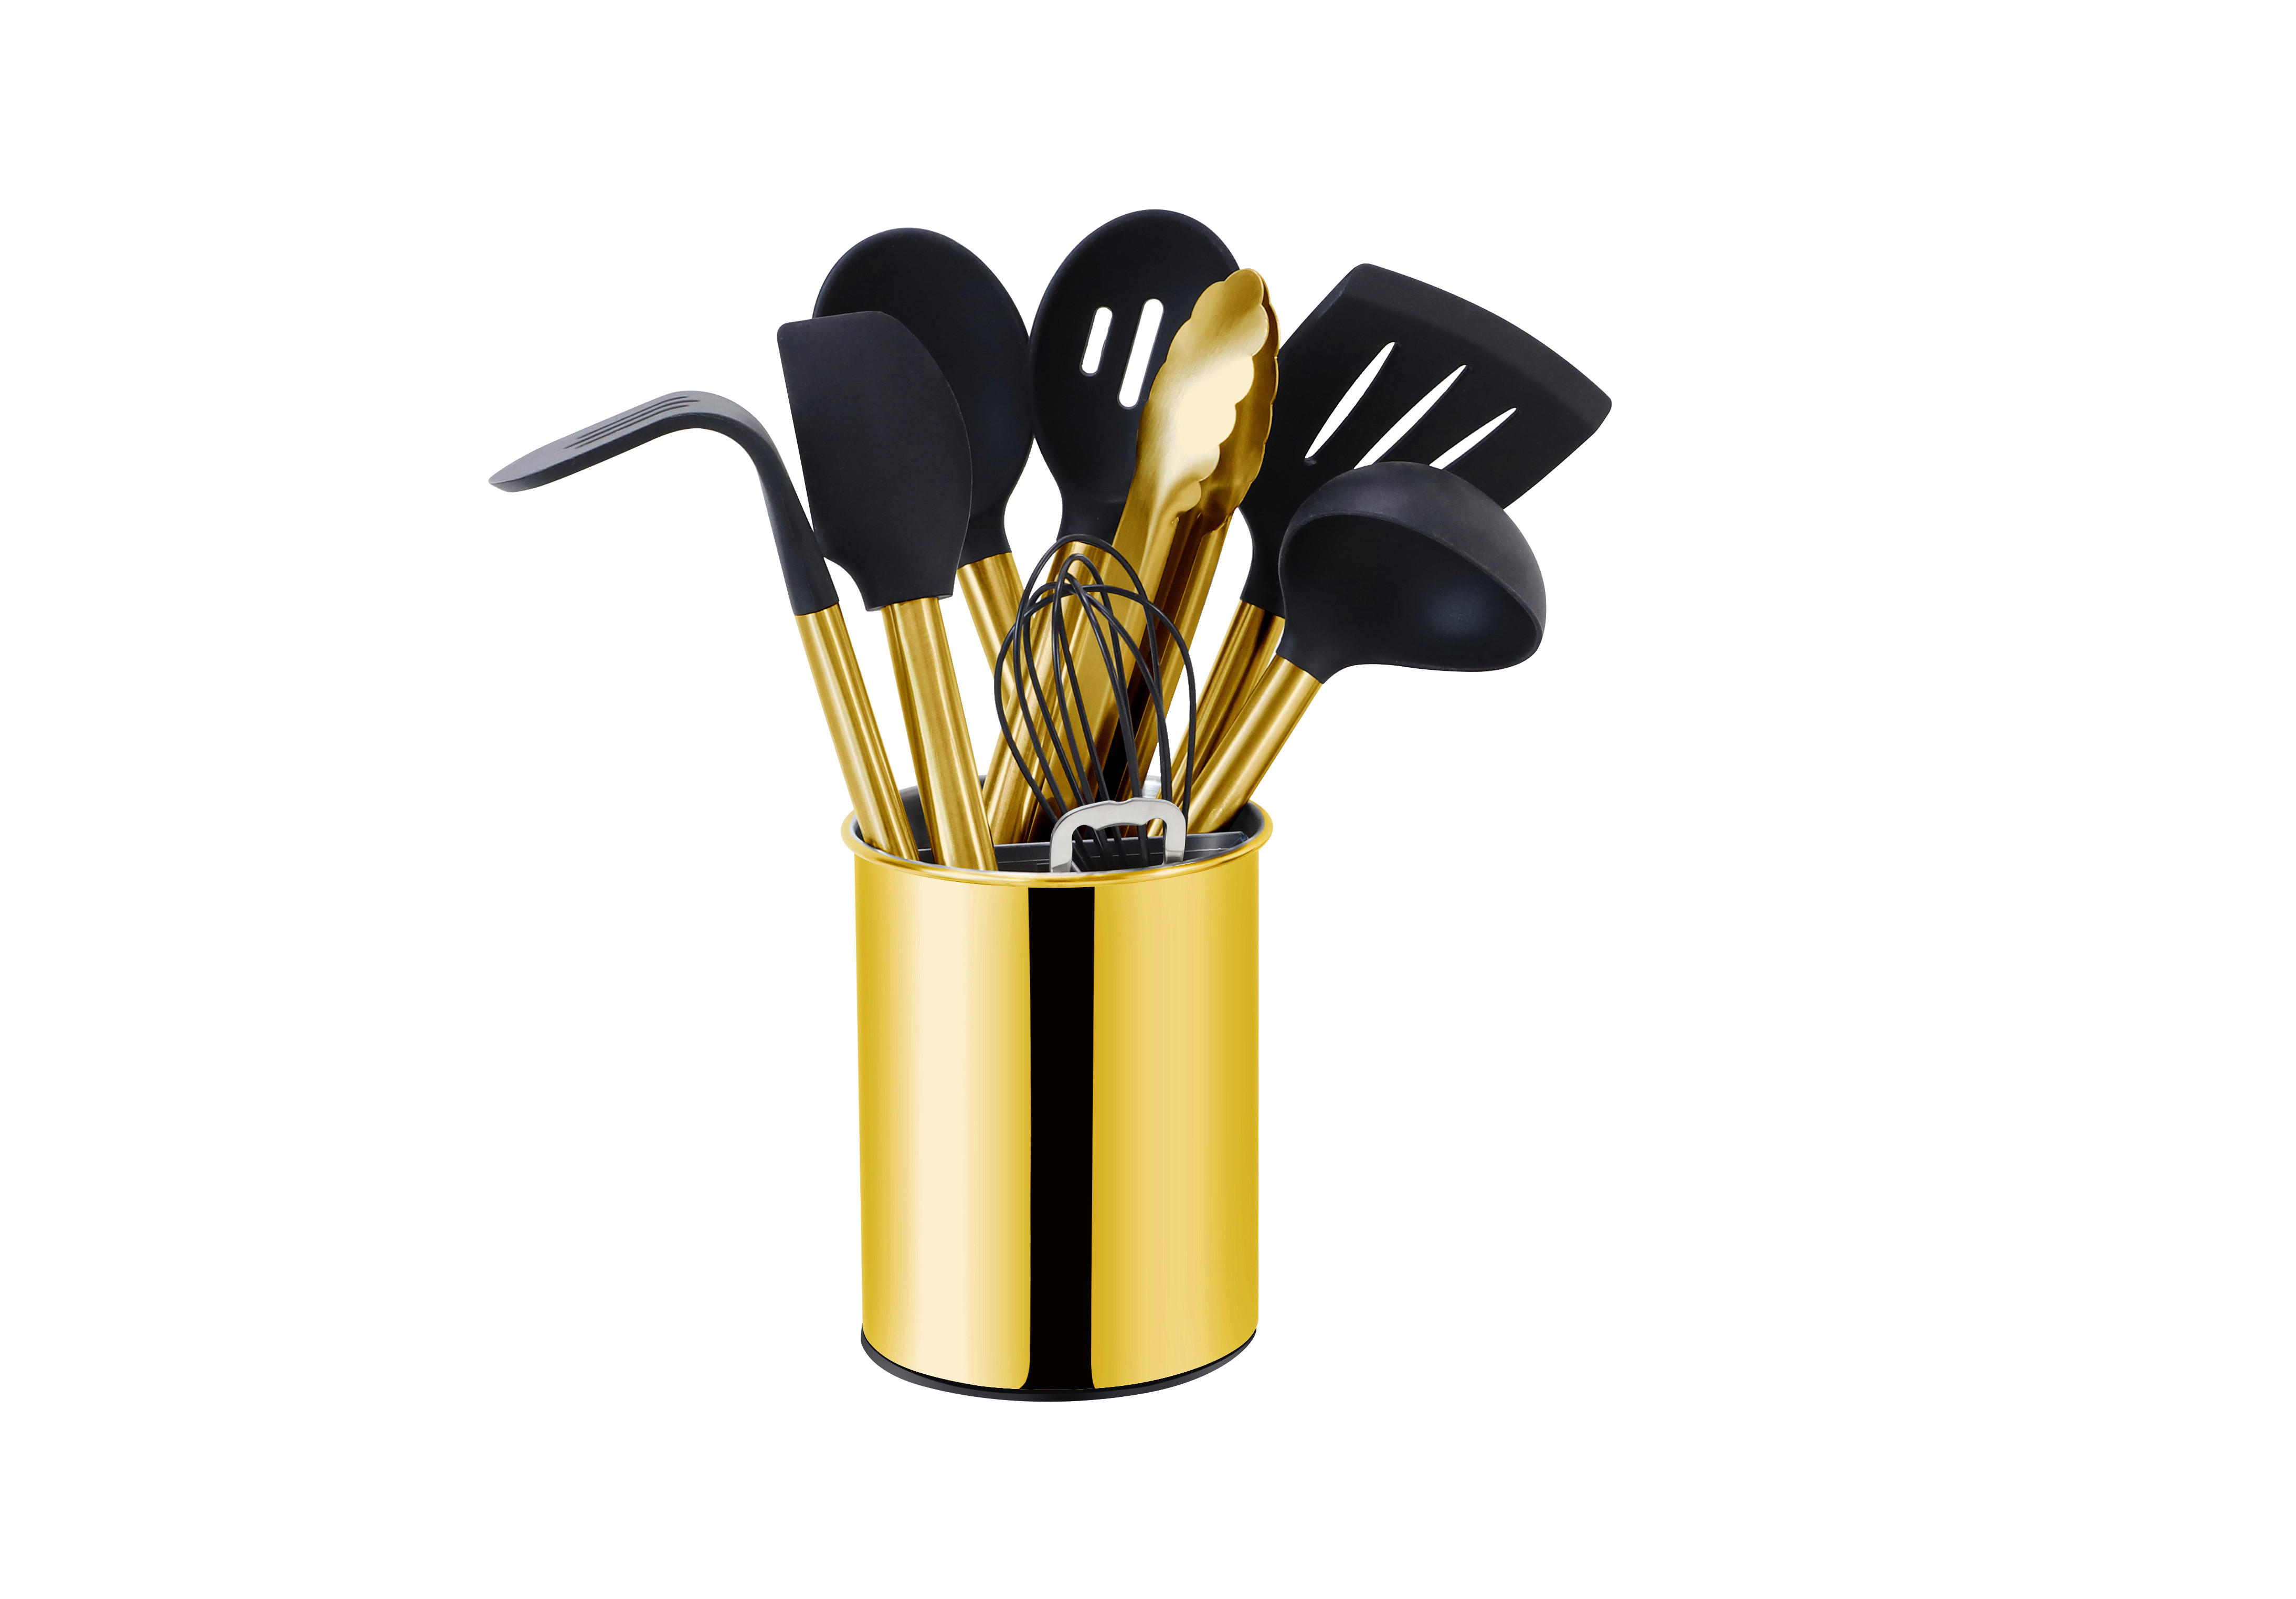 KÖKSREDSKAP SET - svart/guldfärgad, Basics, metall/plast (13cm) - Echtwerk